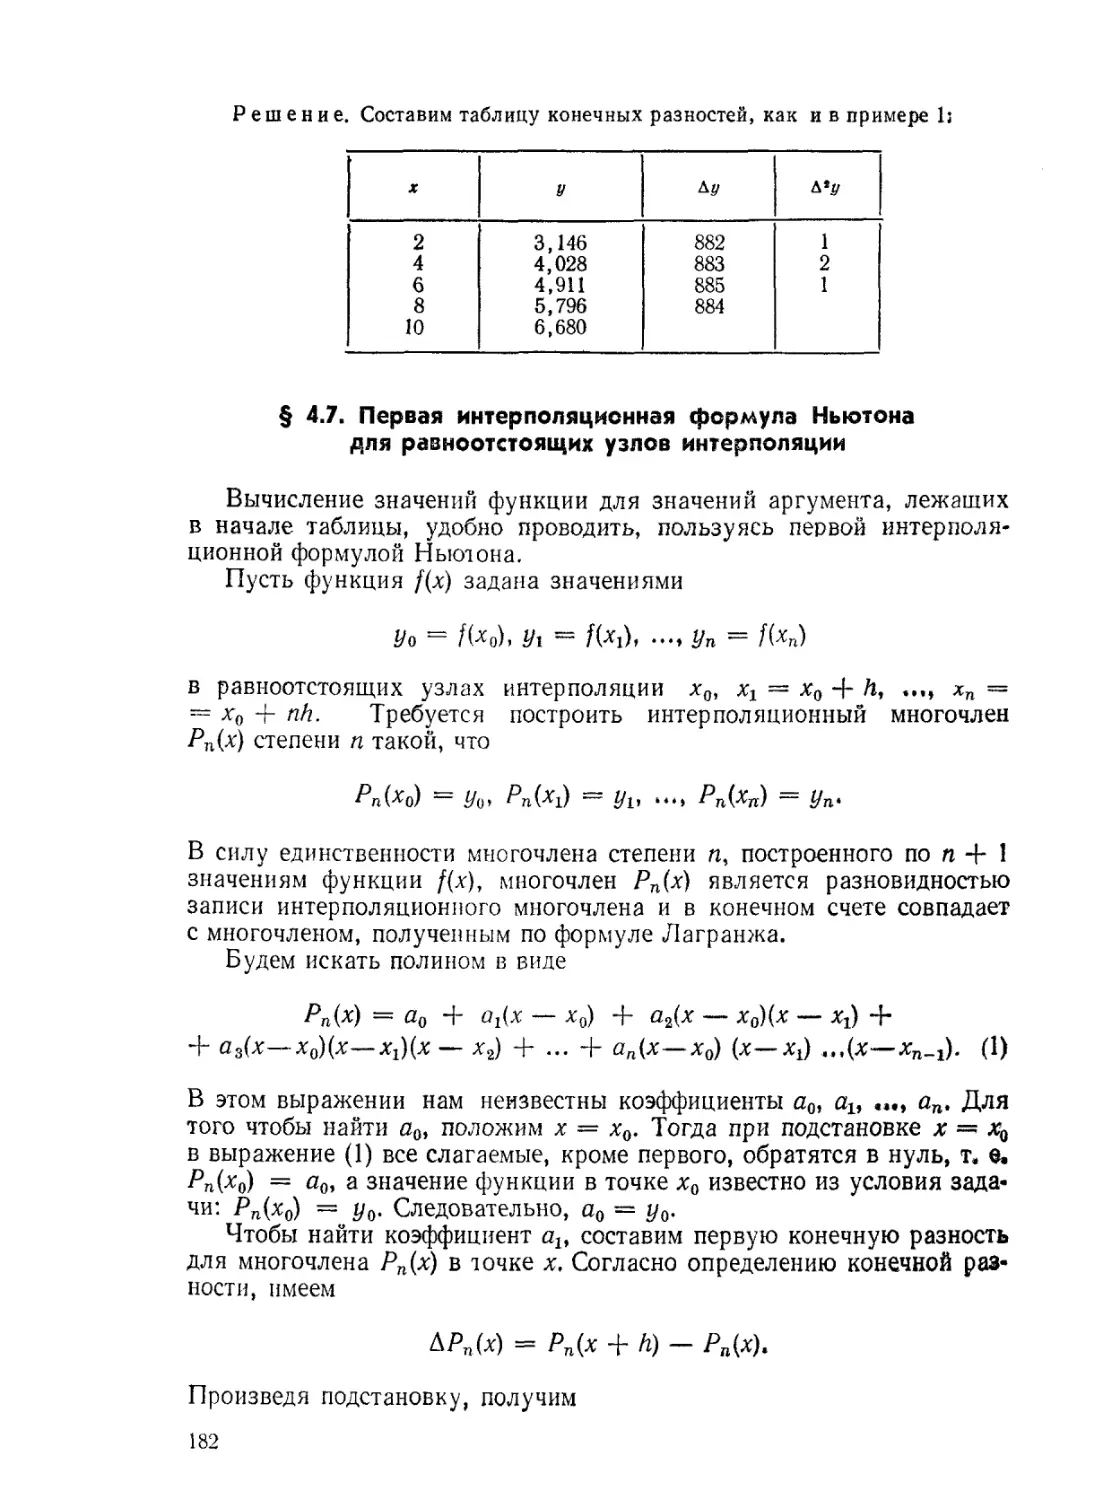 § 4.7. Первая интерполяционная формула Ньютона для равноотстоящих узлов интерполяции